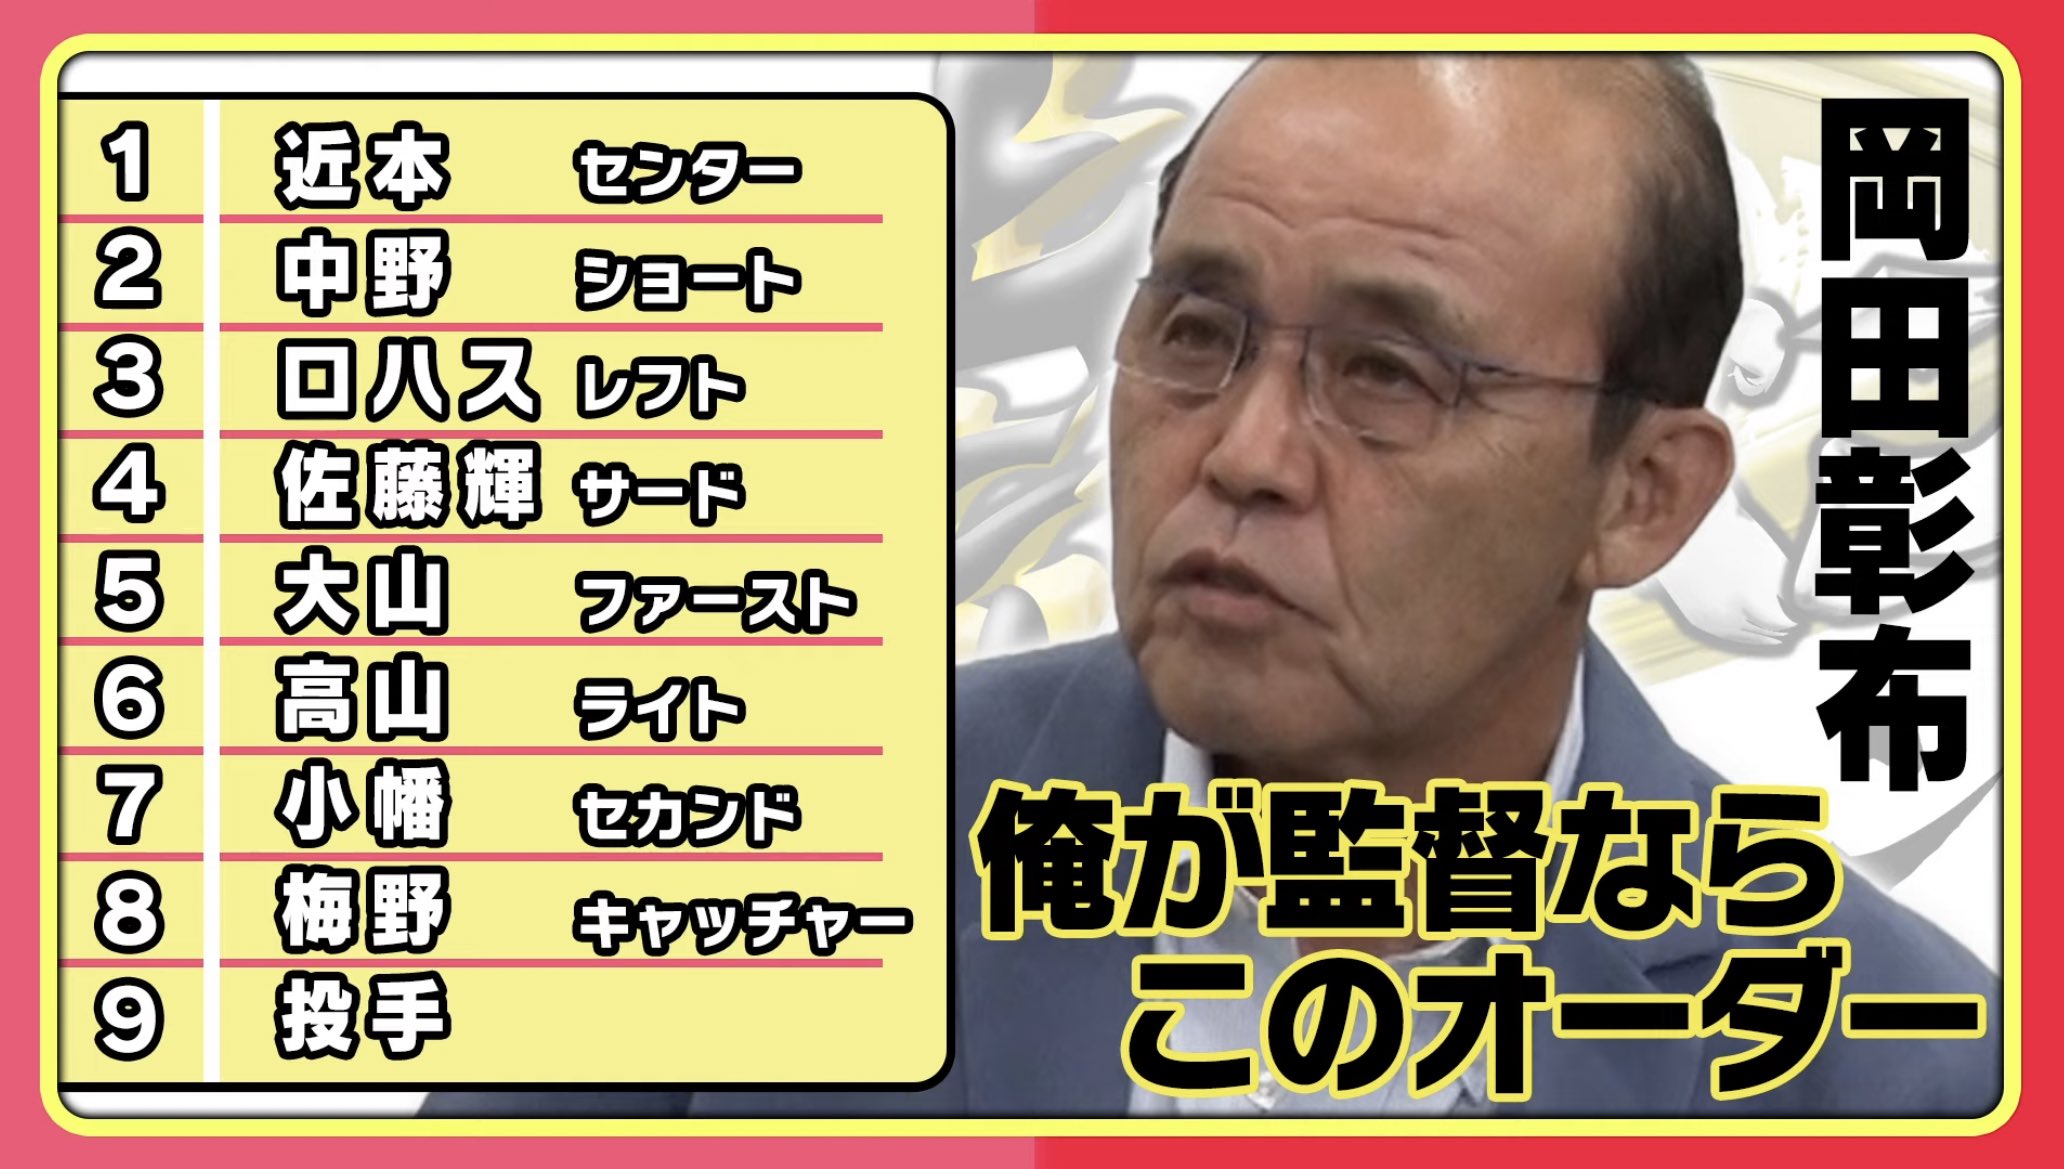 阪神の次期監督候補、とんでもない選手をスタメンで推してしまう